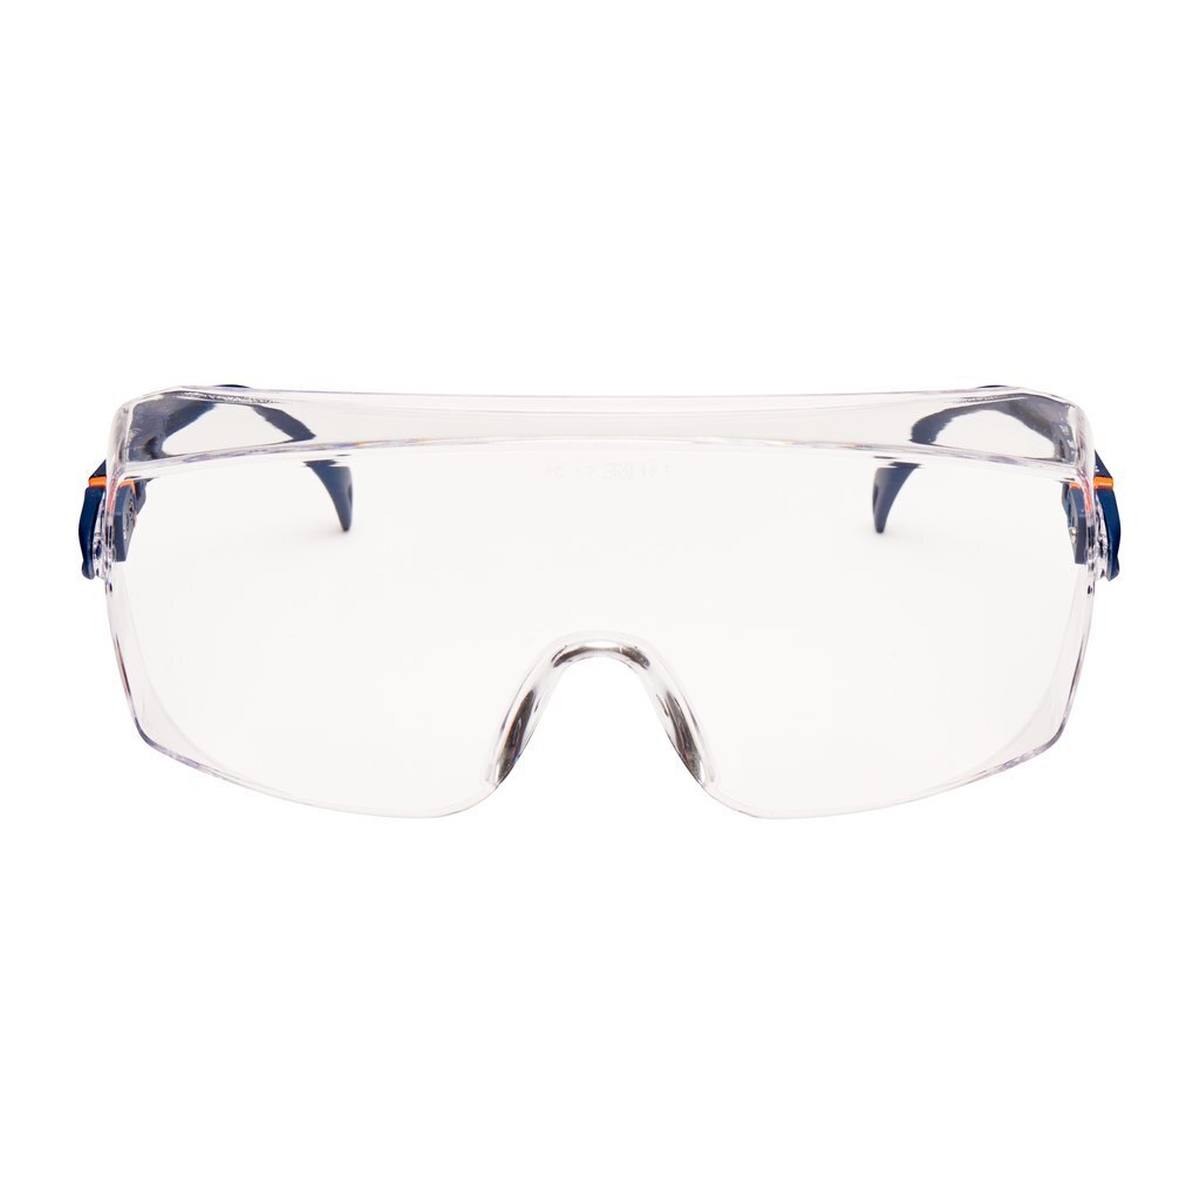 3M 2800 Schutzbrille AS/UV, PC, klar, einstellbar, ideal als Überbrille für Brillenträger